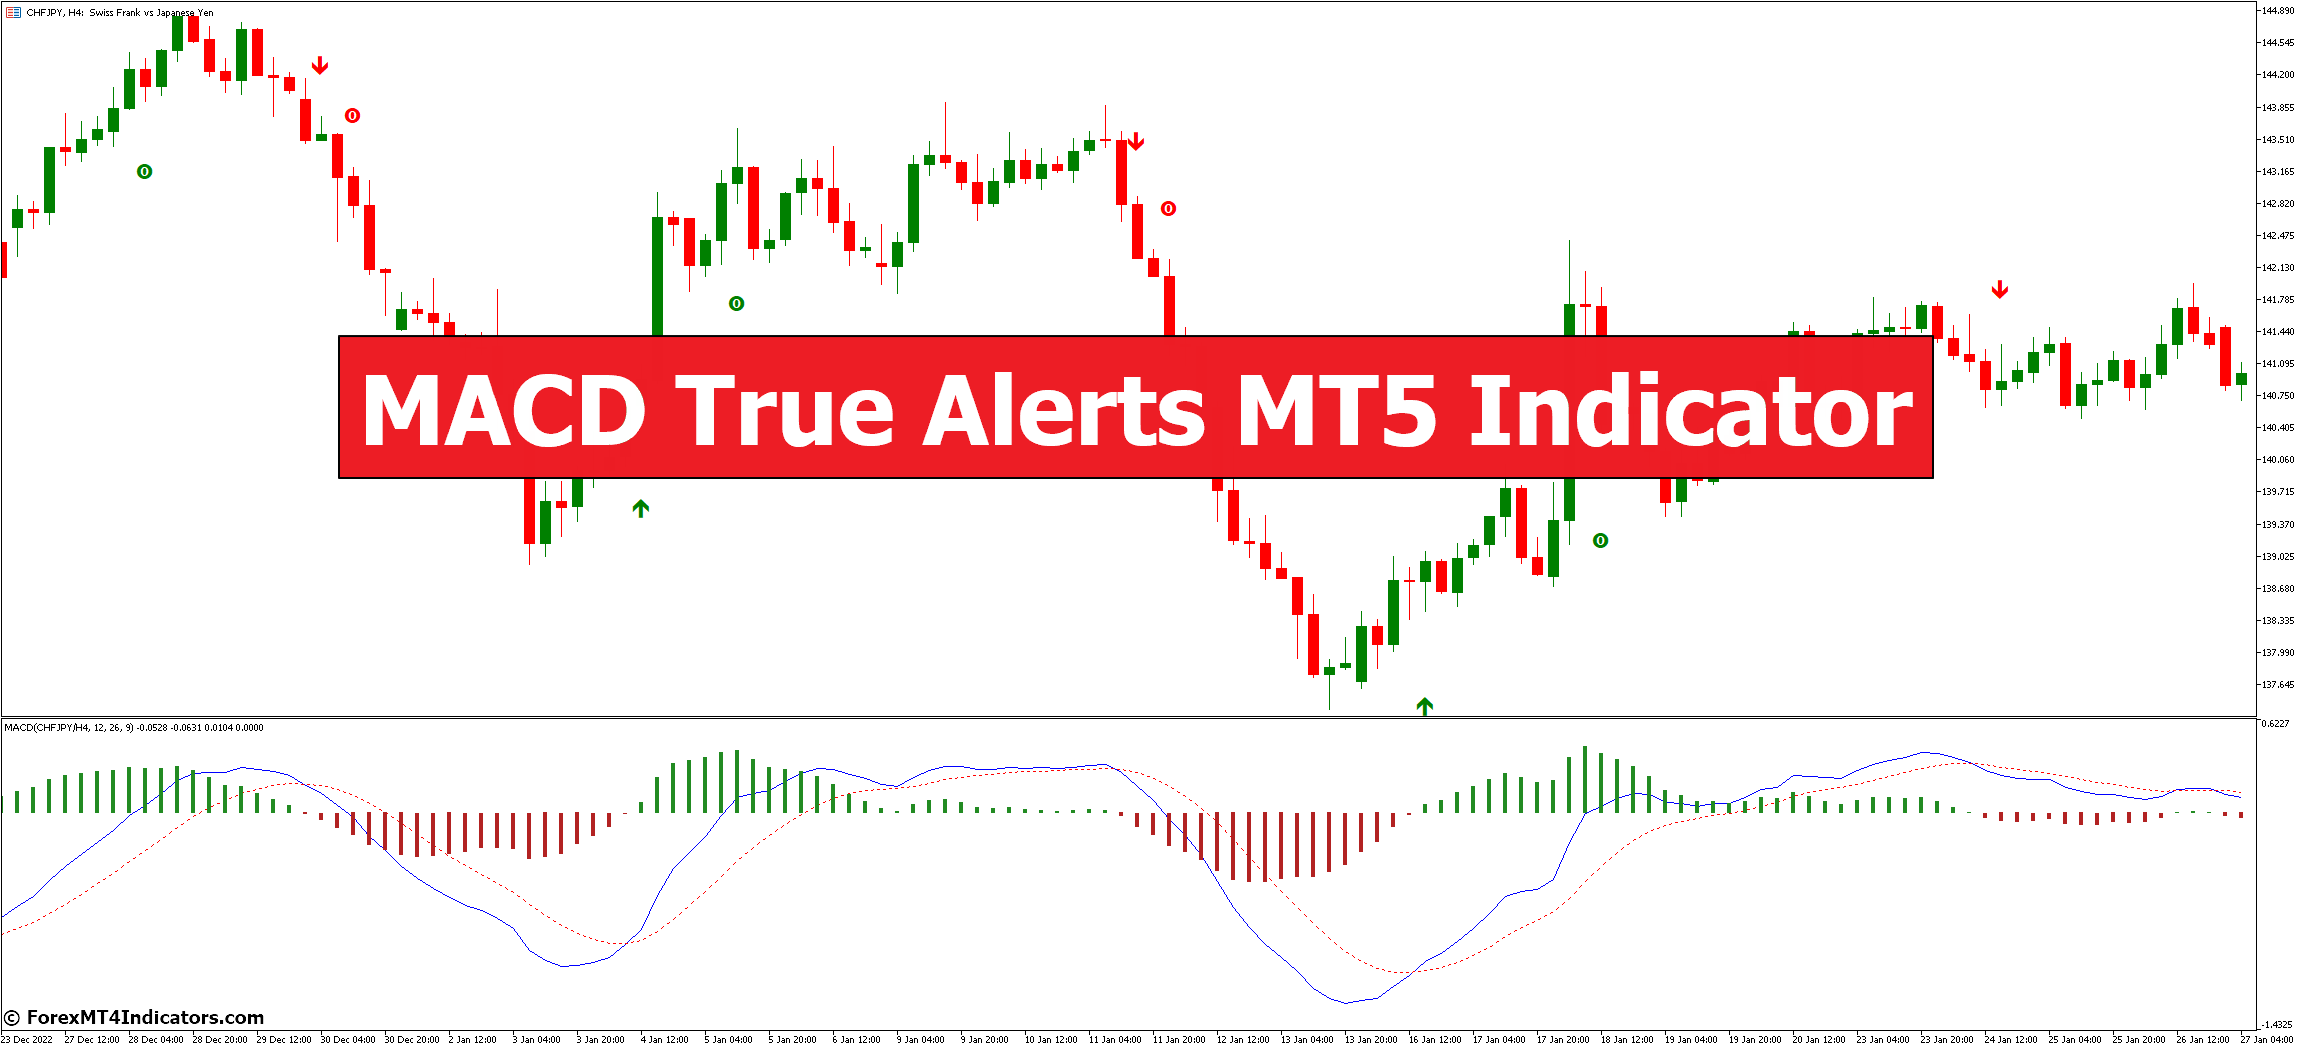 MACD True Alerts MT5 Indicator